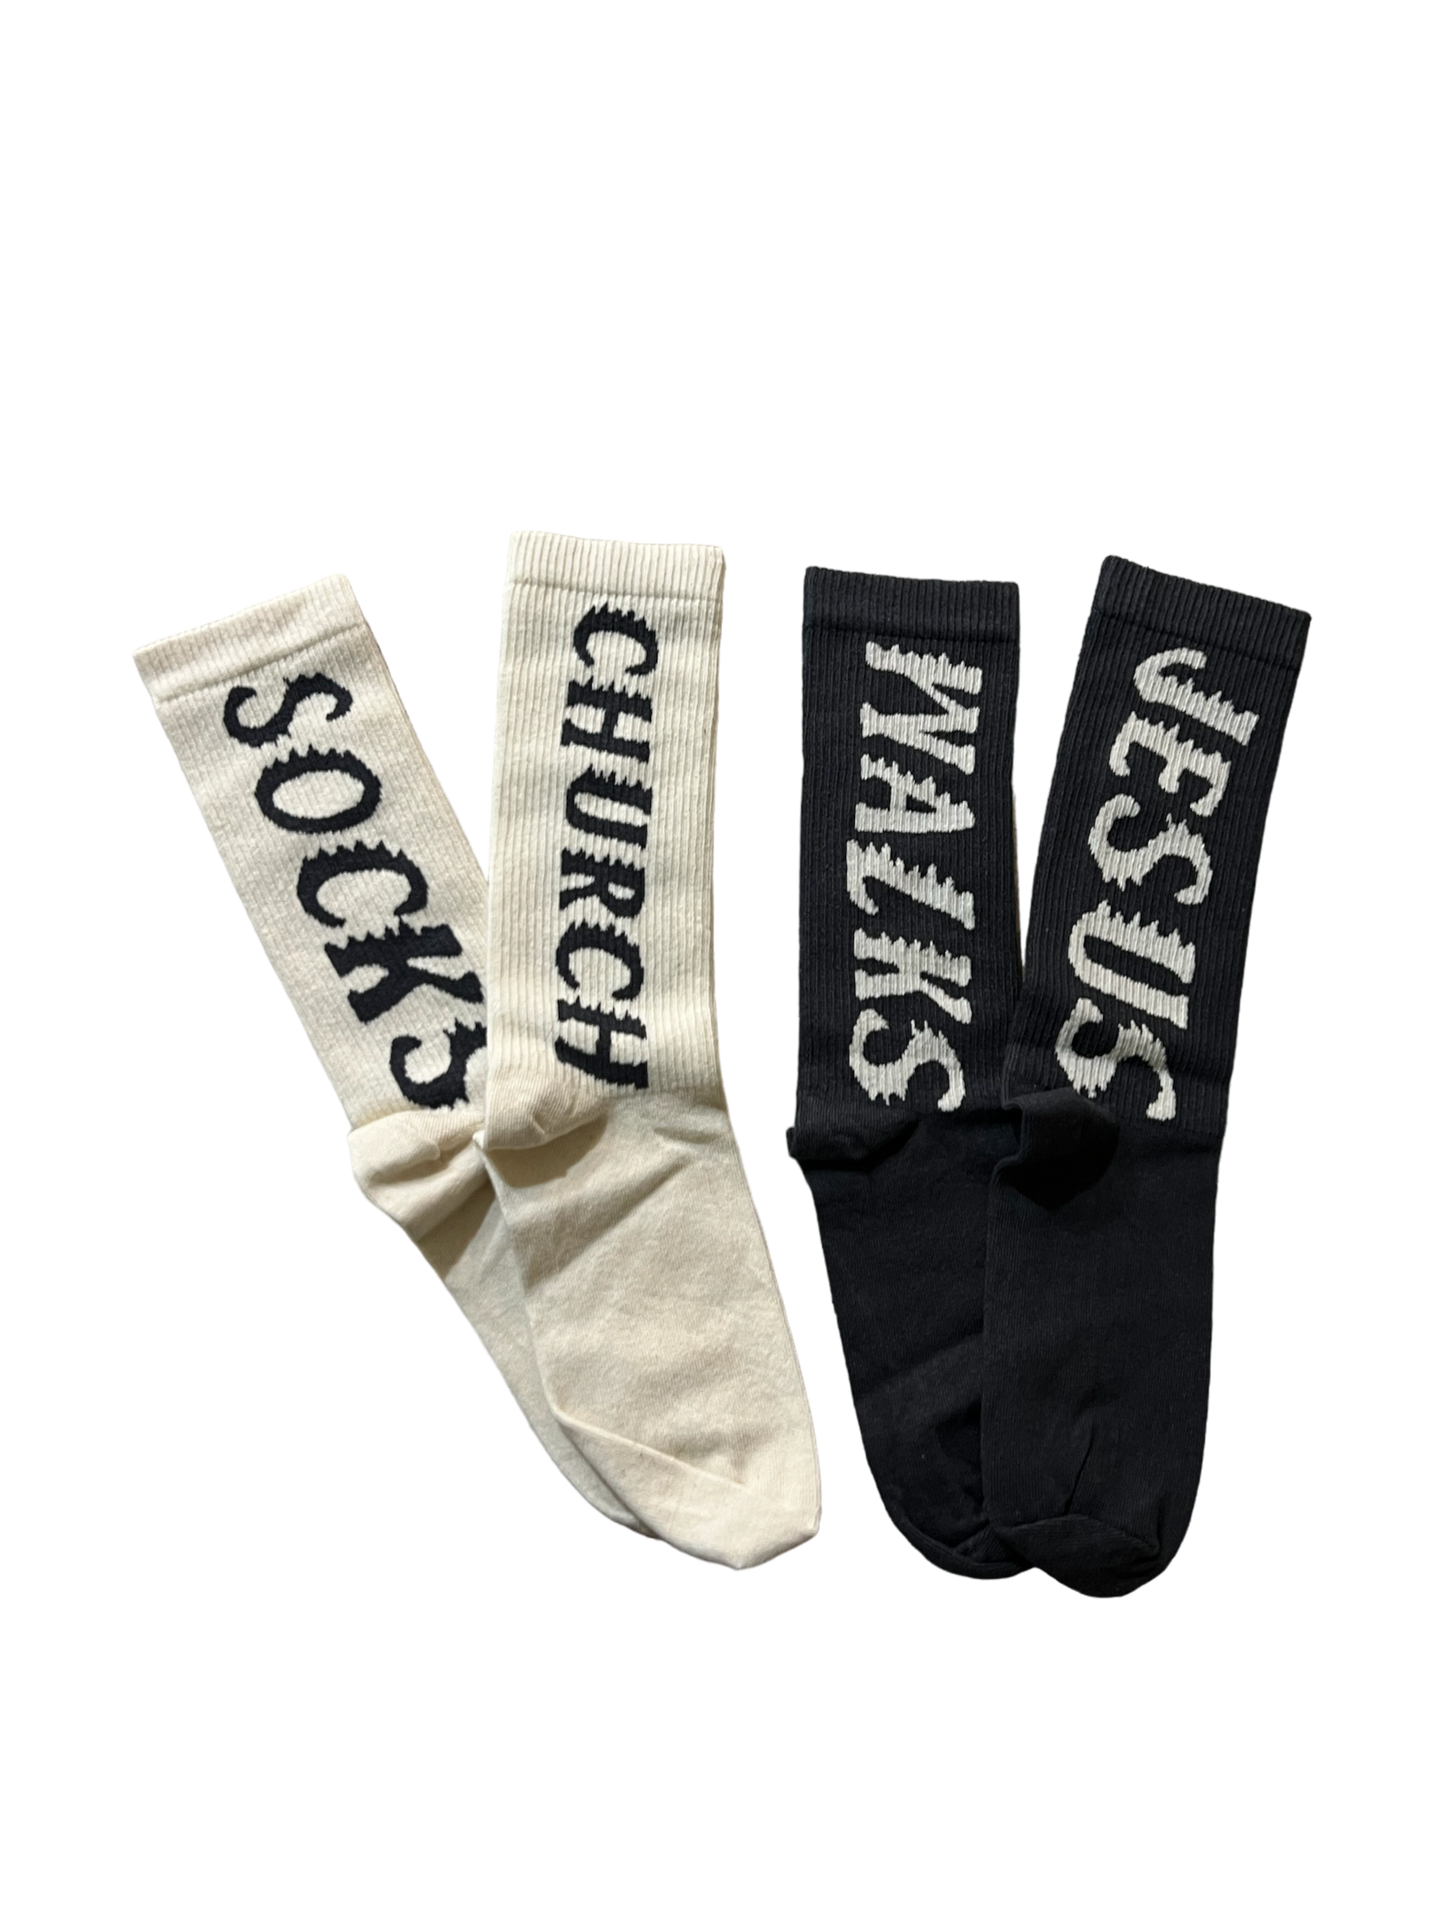 YZY Jesus Walks Socks (2 Pack)
Bone Soot